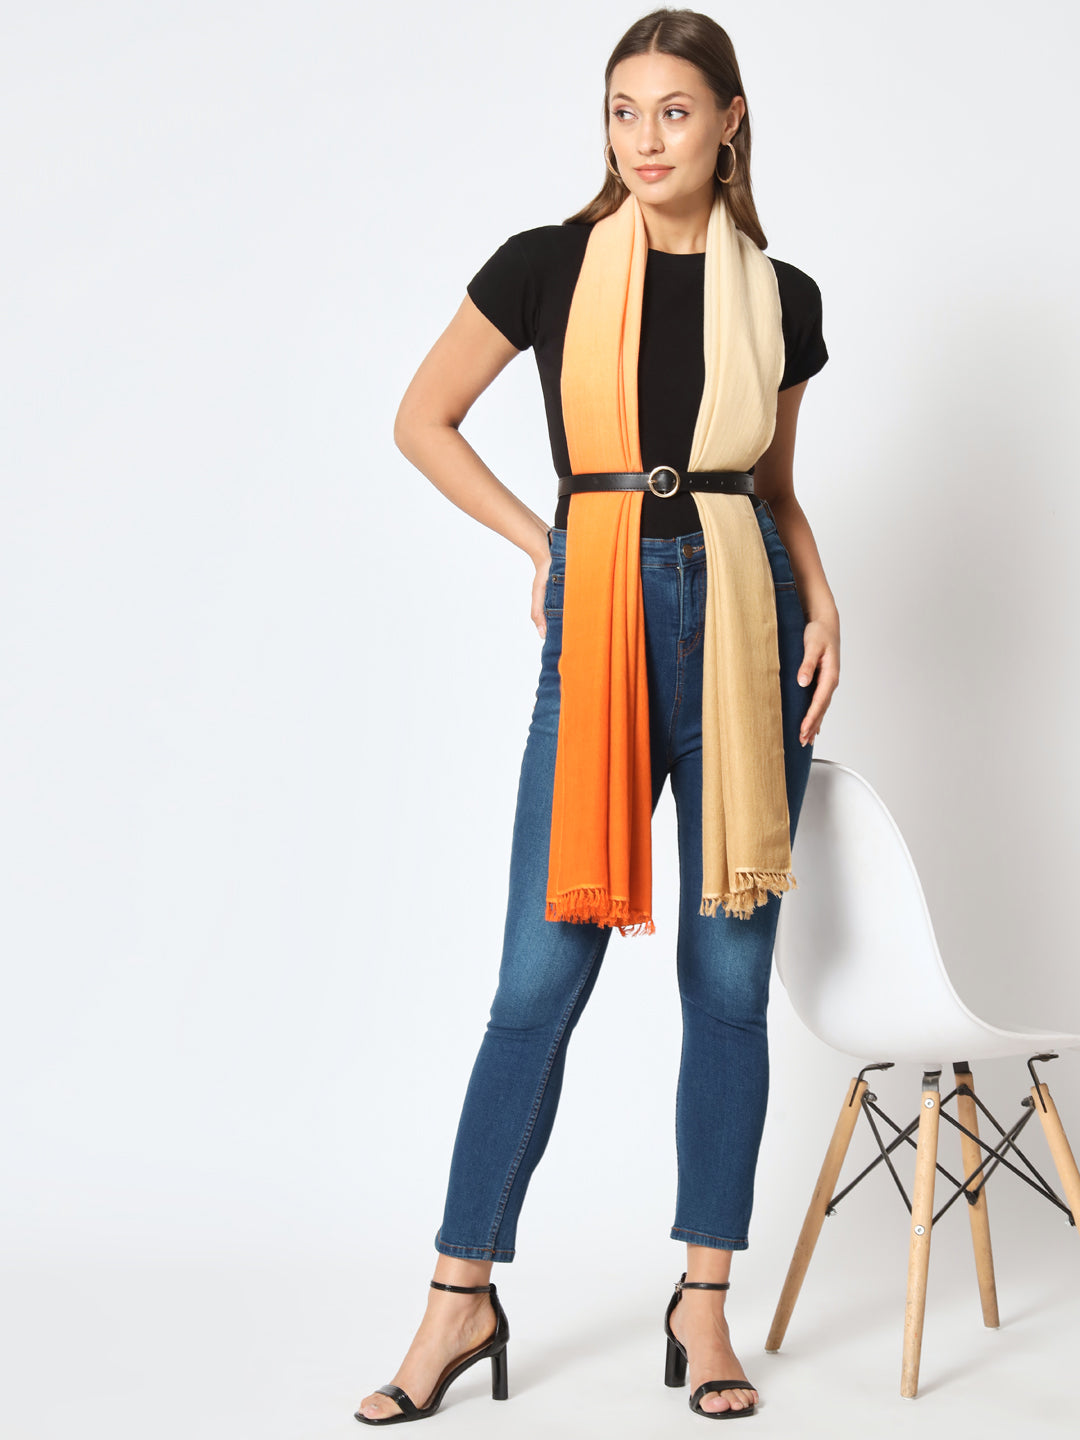 orange shawl for wedding, winter shawls